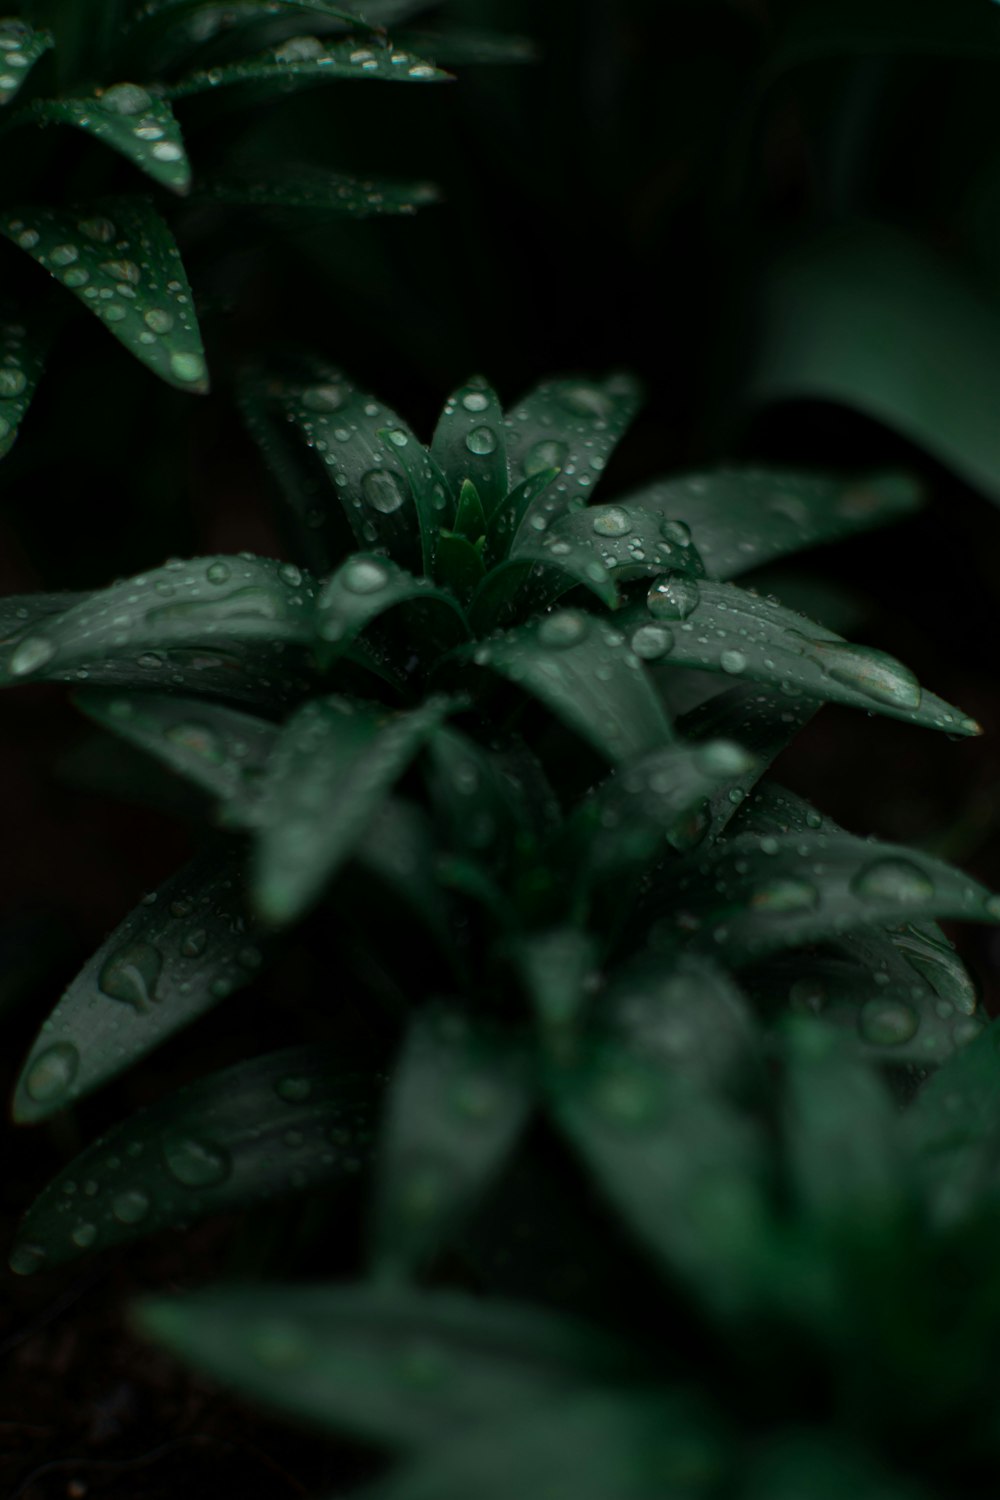 緑の植物の水滴